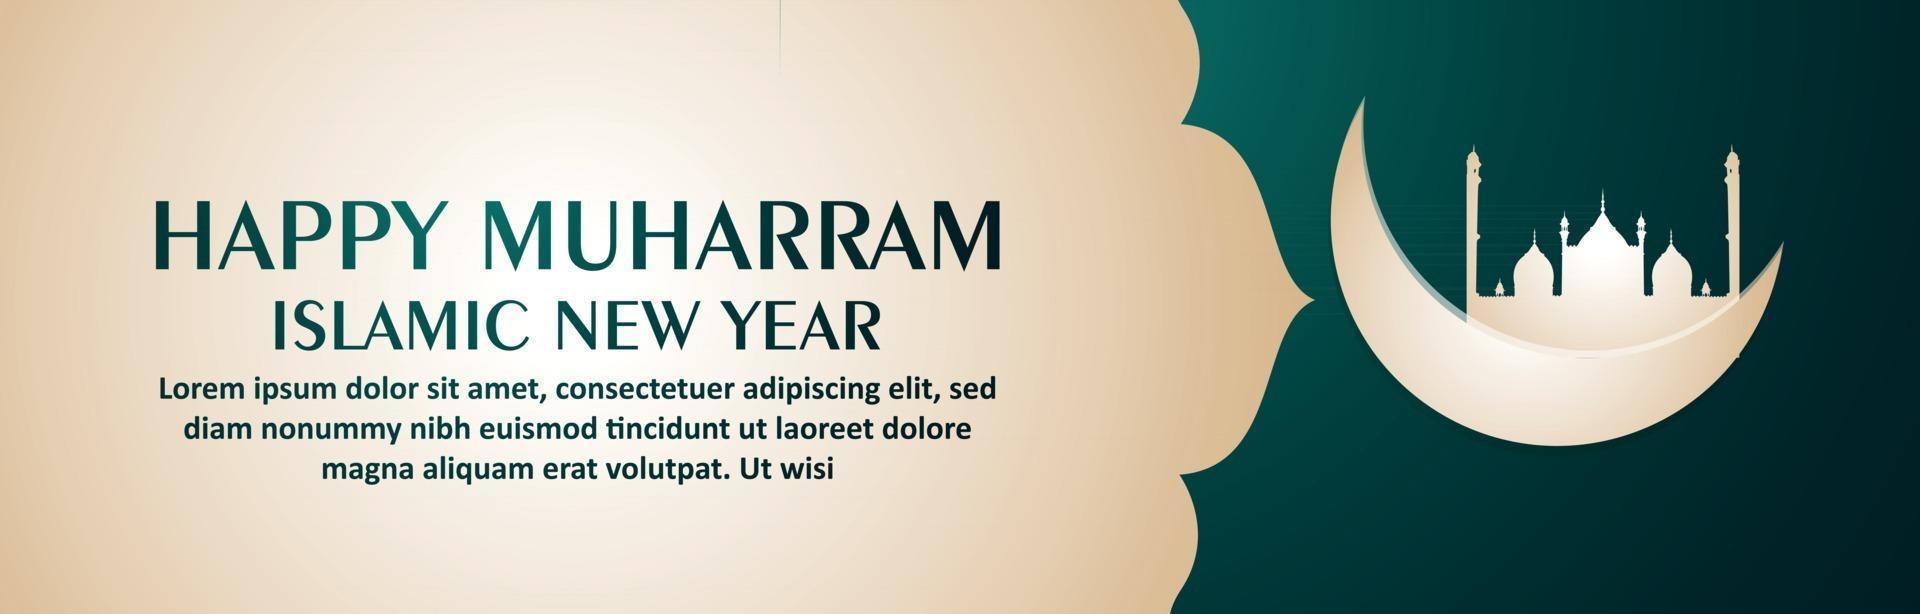 banner ou cabeçalho de celebração de feliz ano novo islâmico muharram vetor